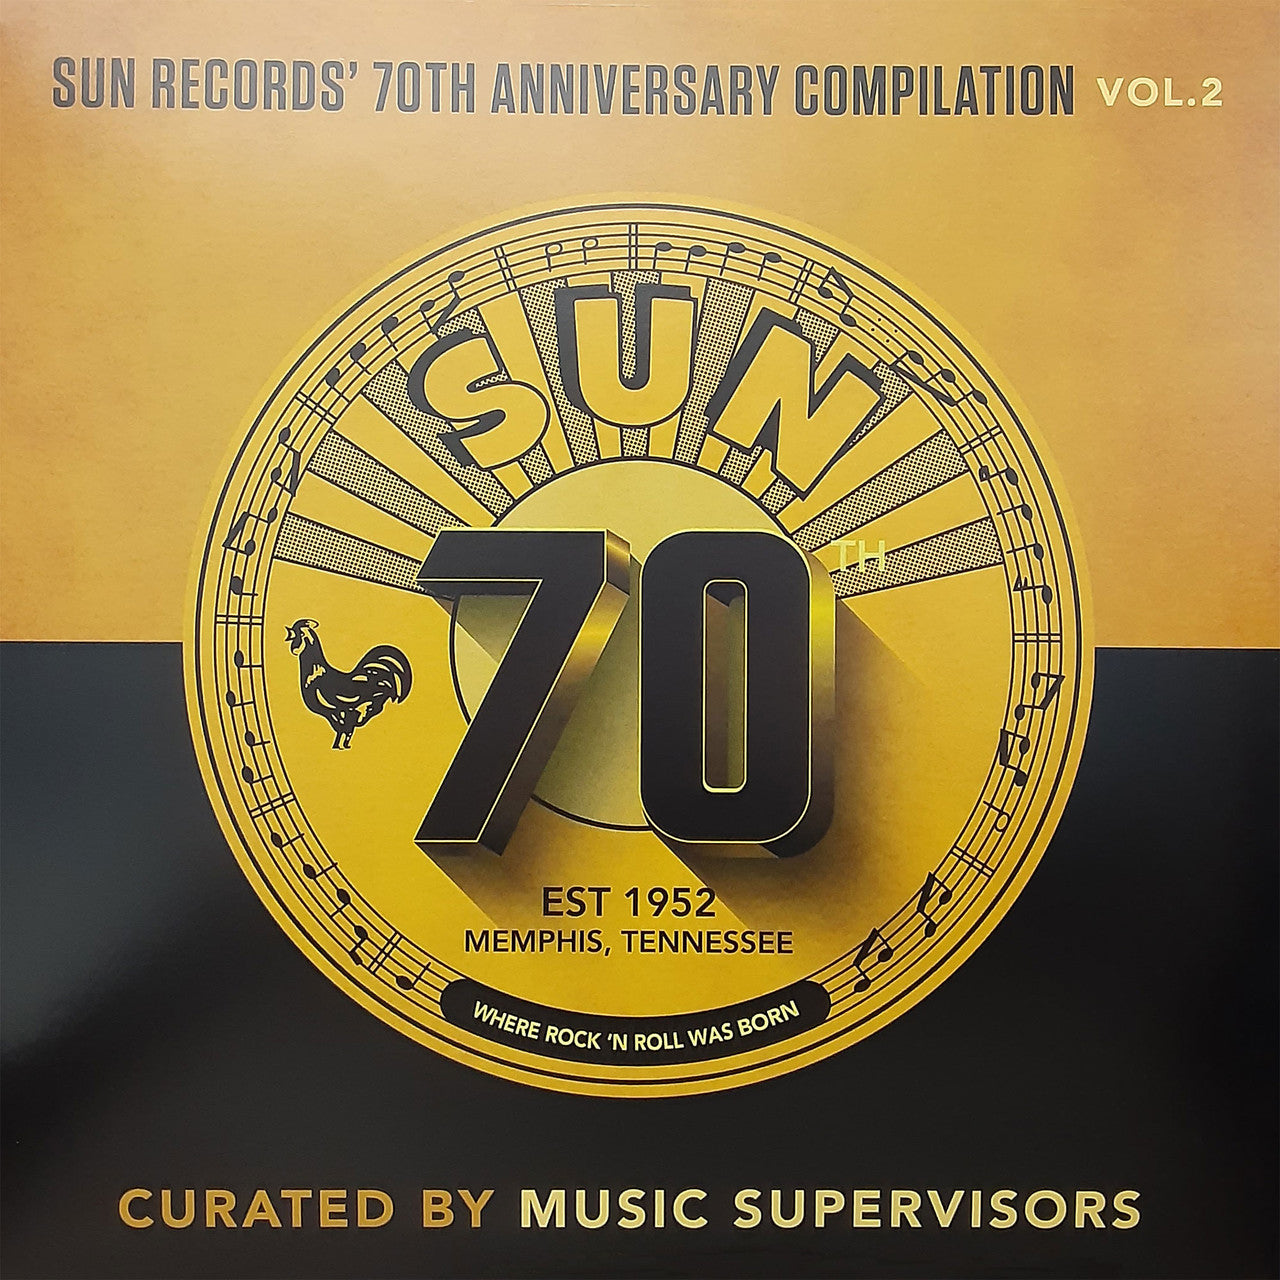 VARIOS ARTISTAS - SUN 70TH: SUN RECORDS ANIVERSARY COMPILATION NO. 2 - CURADO POR SUPERVISORES DE MÚSICA - LP DE VINILO